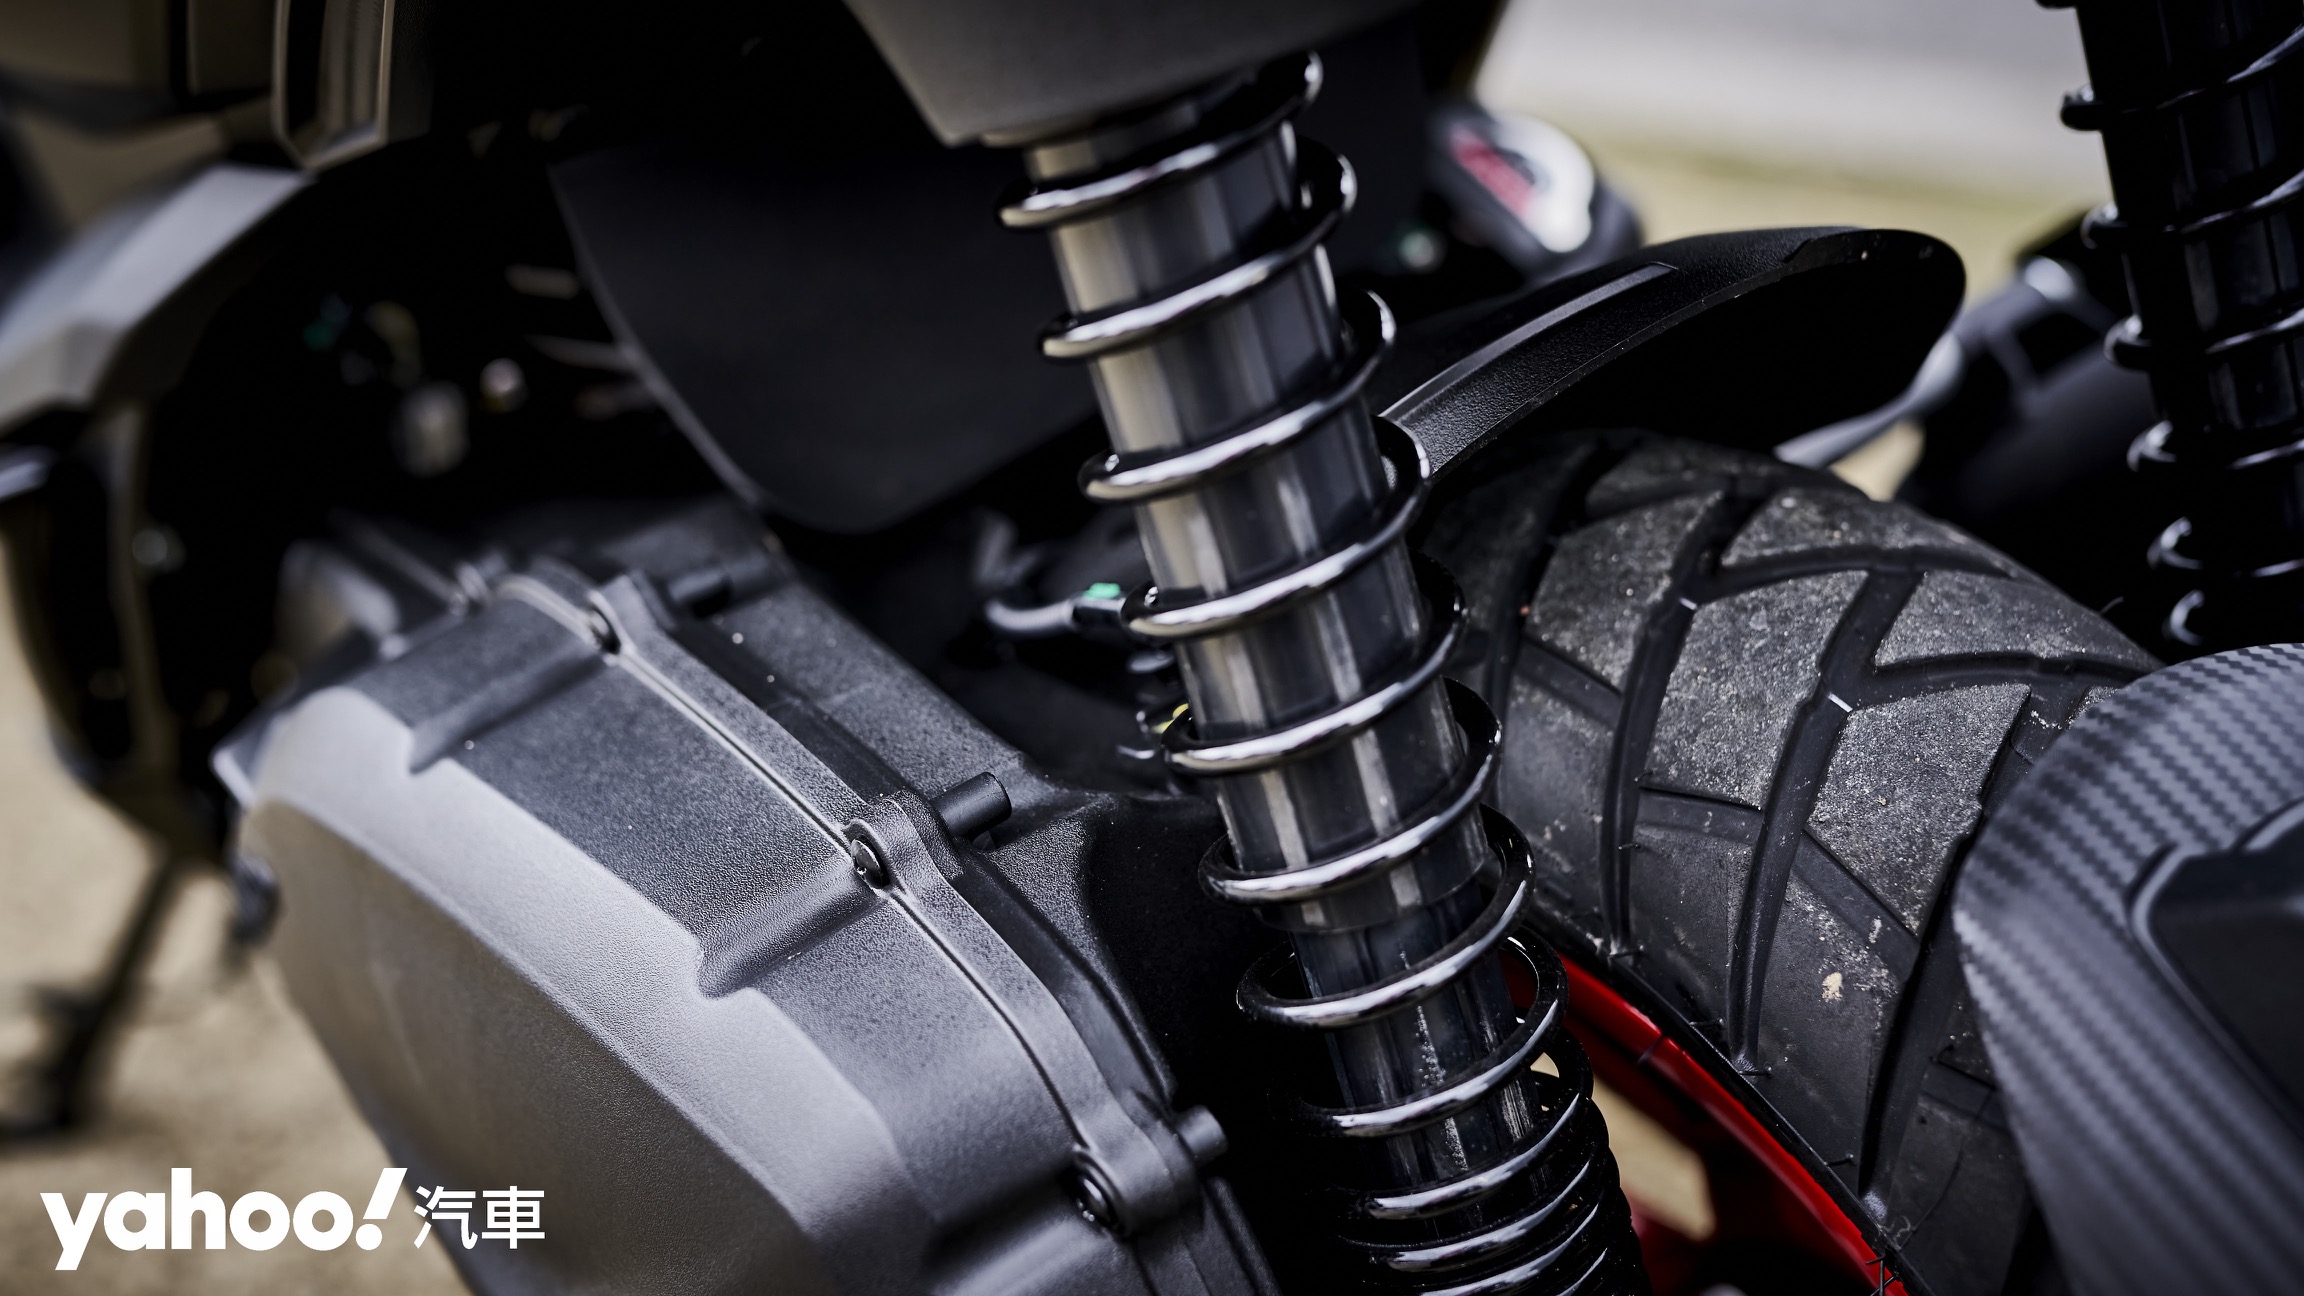 單迴路ABS煞車防鎖死系統在抓地力較差的路面需注意後輪煞車使用。